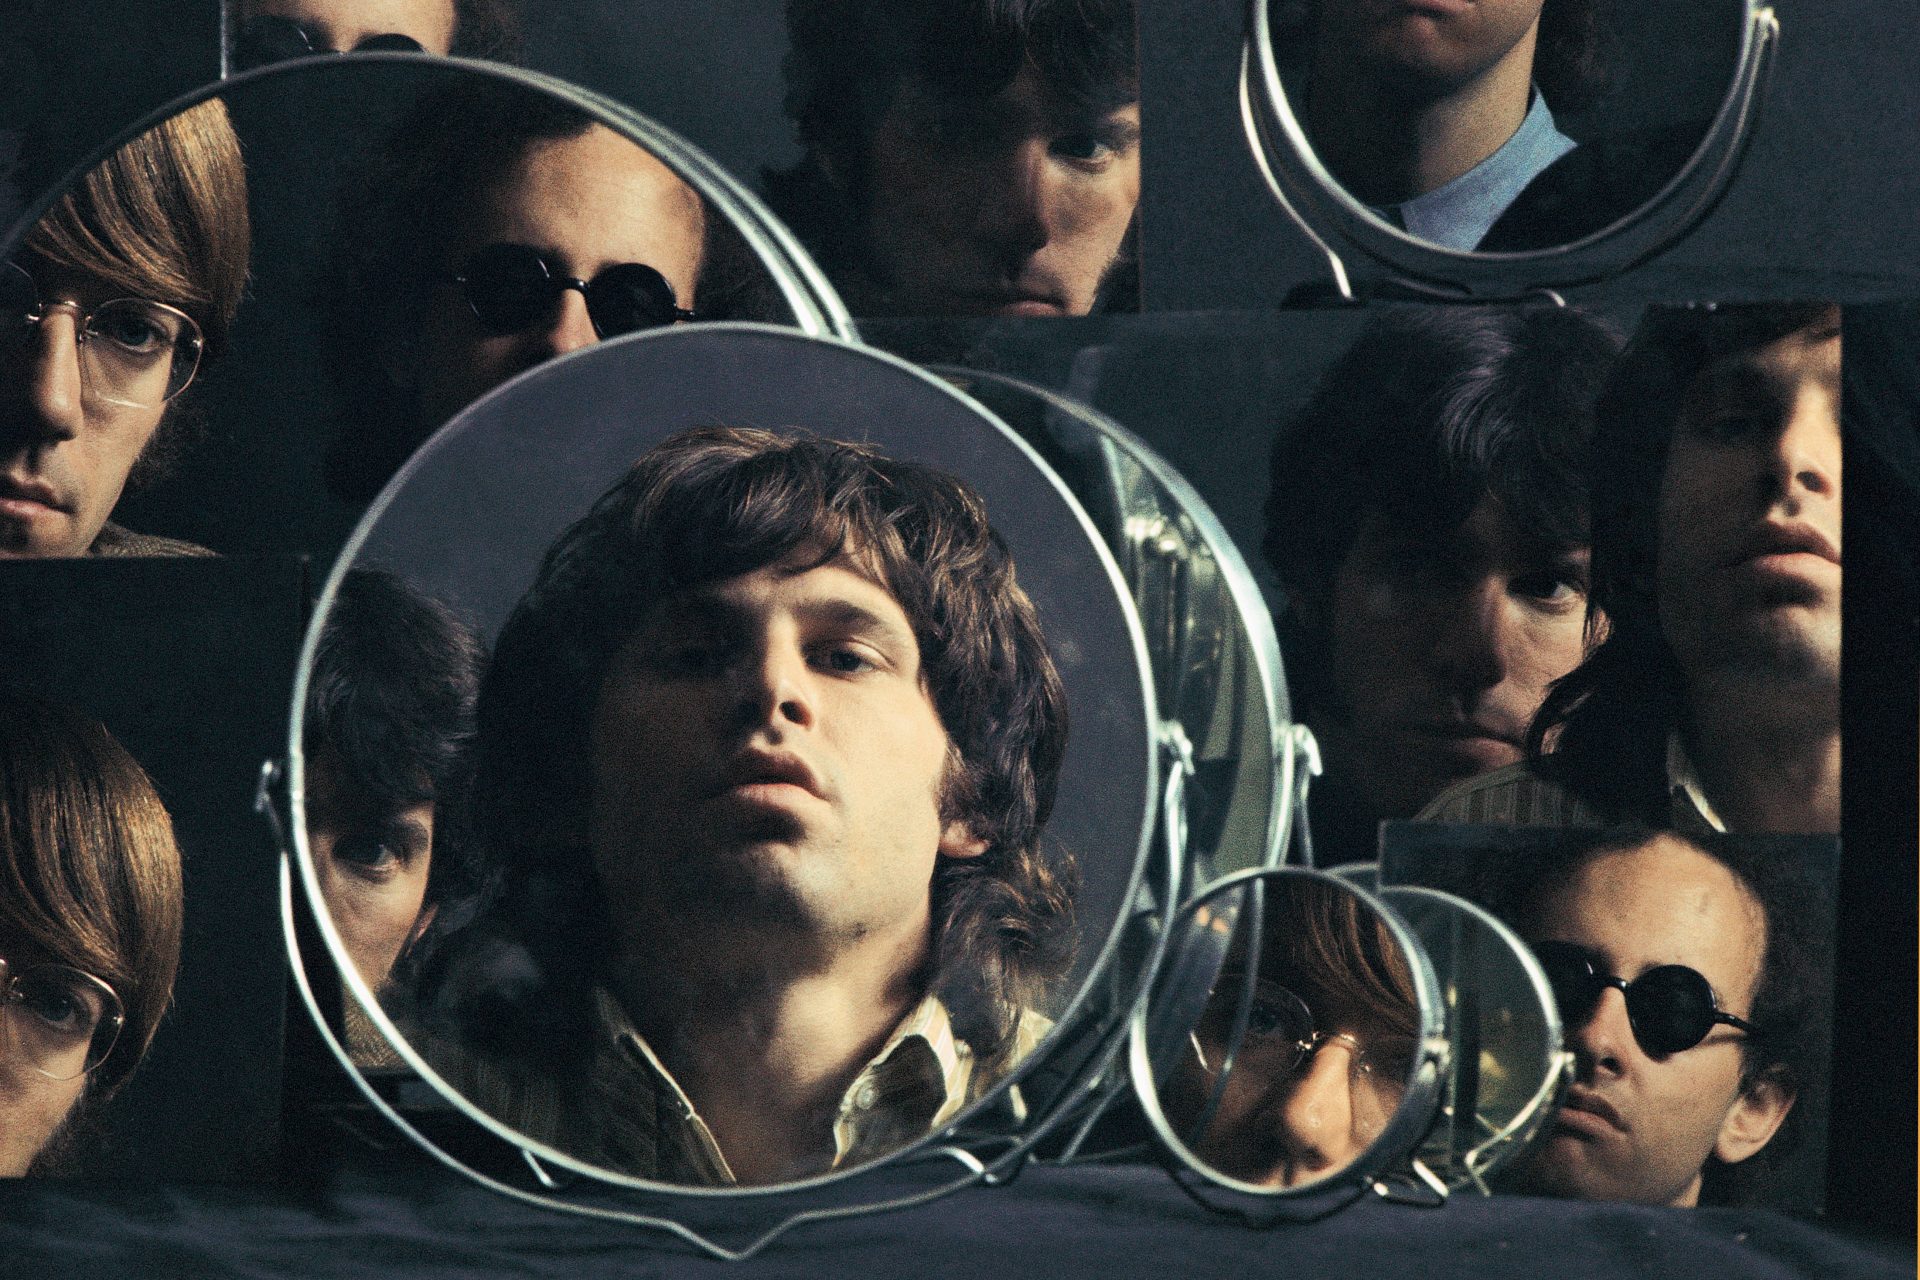 <p>Jim Morrison, leader dei Doors, con il suo carisma sul palco e i suoi testi poetici, è diventato un'icona del rock. La sua morte prematura all'età di 27 anni lo ha immortalato come una figura iconica e controversa nella storia della musica. Il suo epitaffio: “Kata ton daimona eaytoy” (Egli ha provocato i suoi stessi demoni, in greco classico)</p>